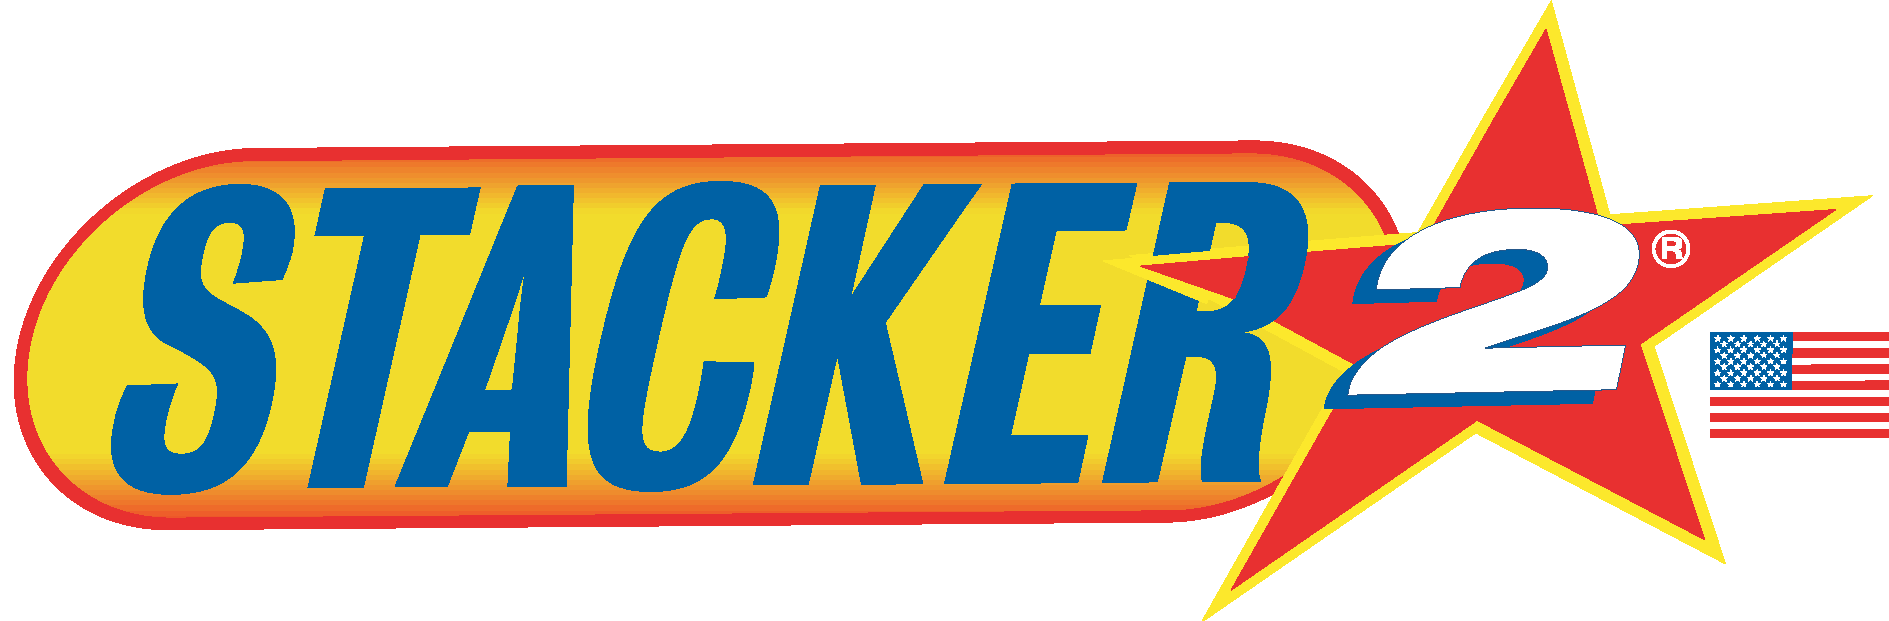 Stacker 2 Logo Vector